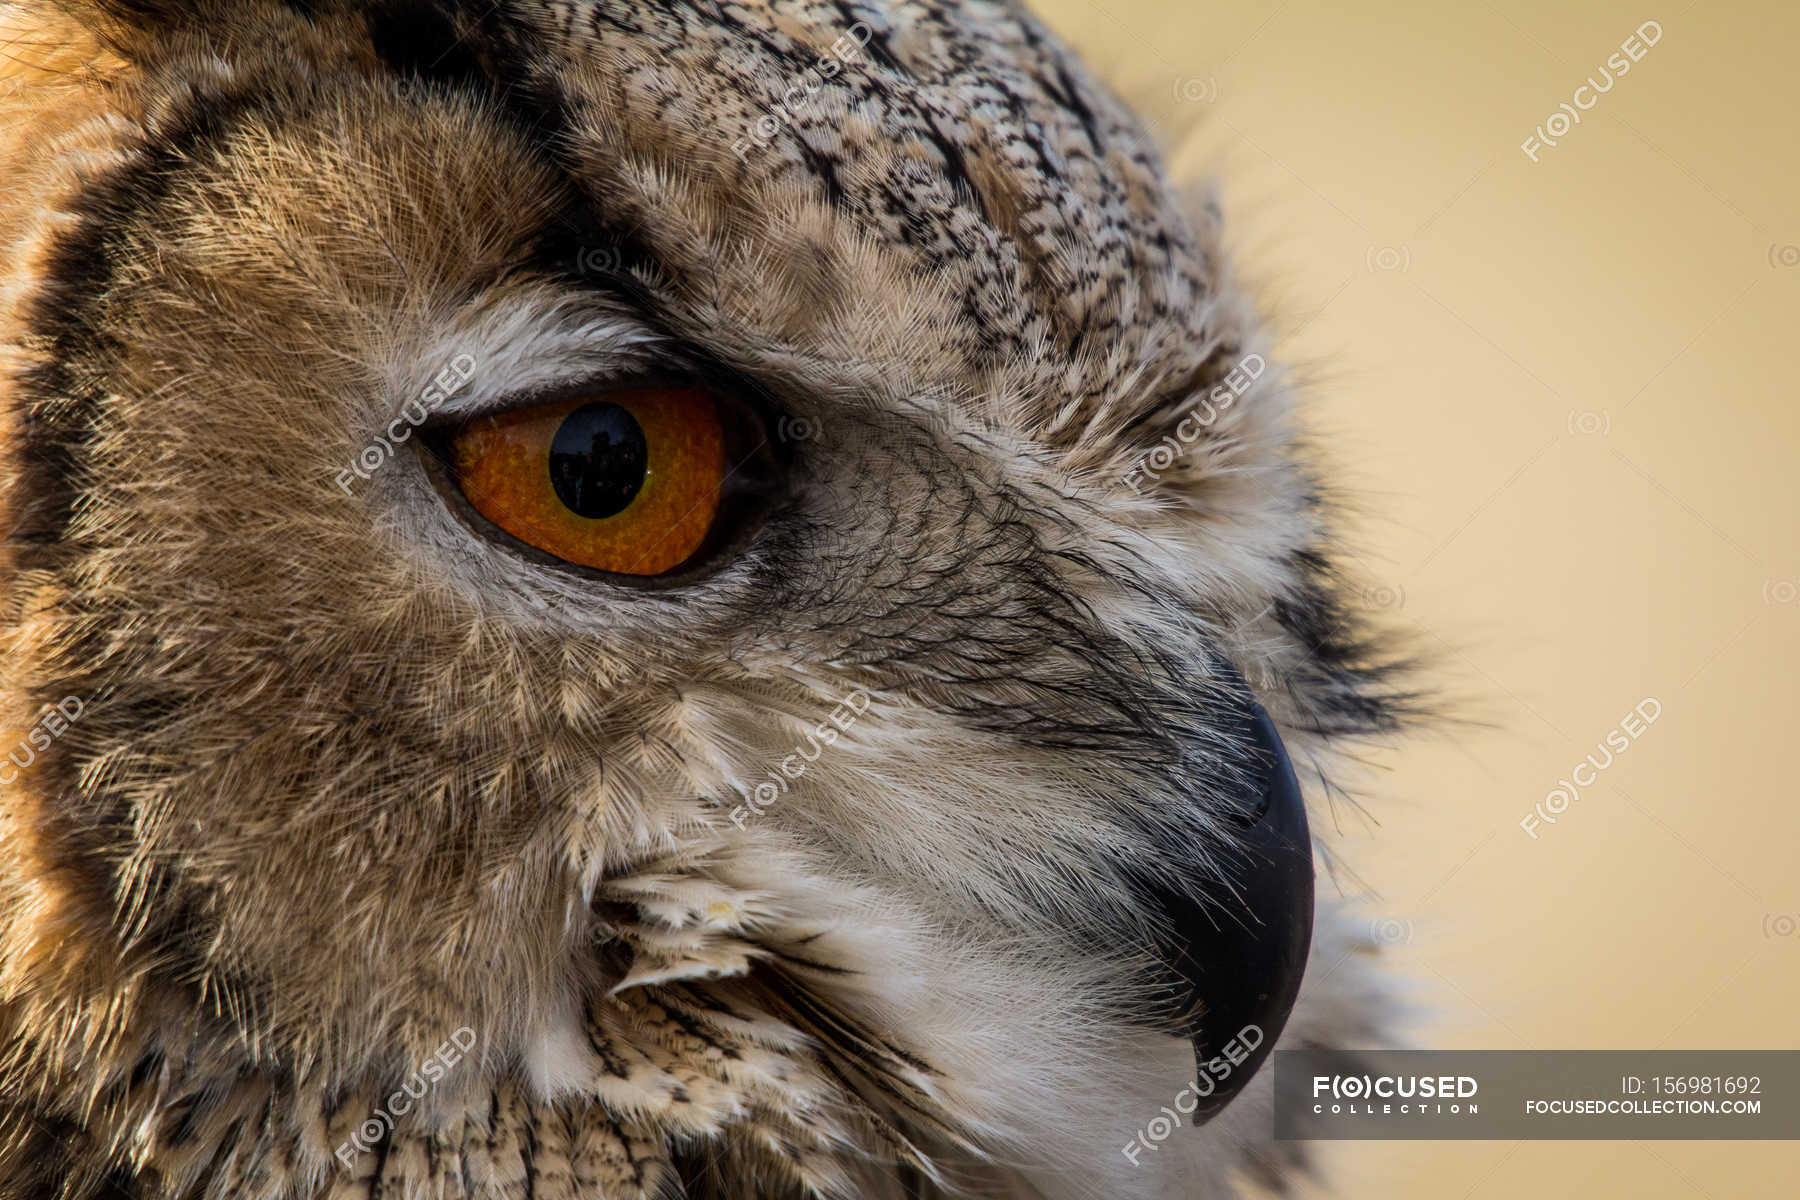 Owl closeup photo